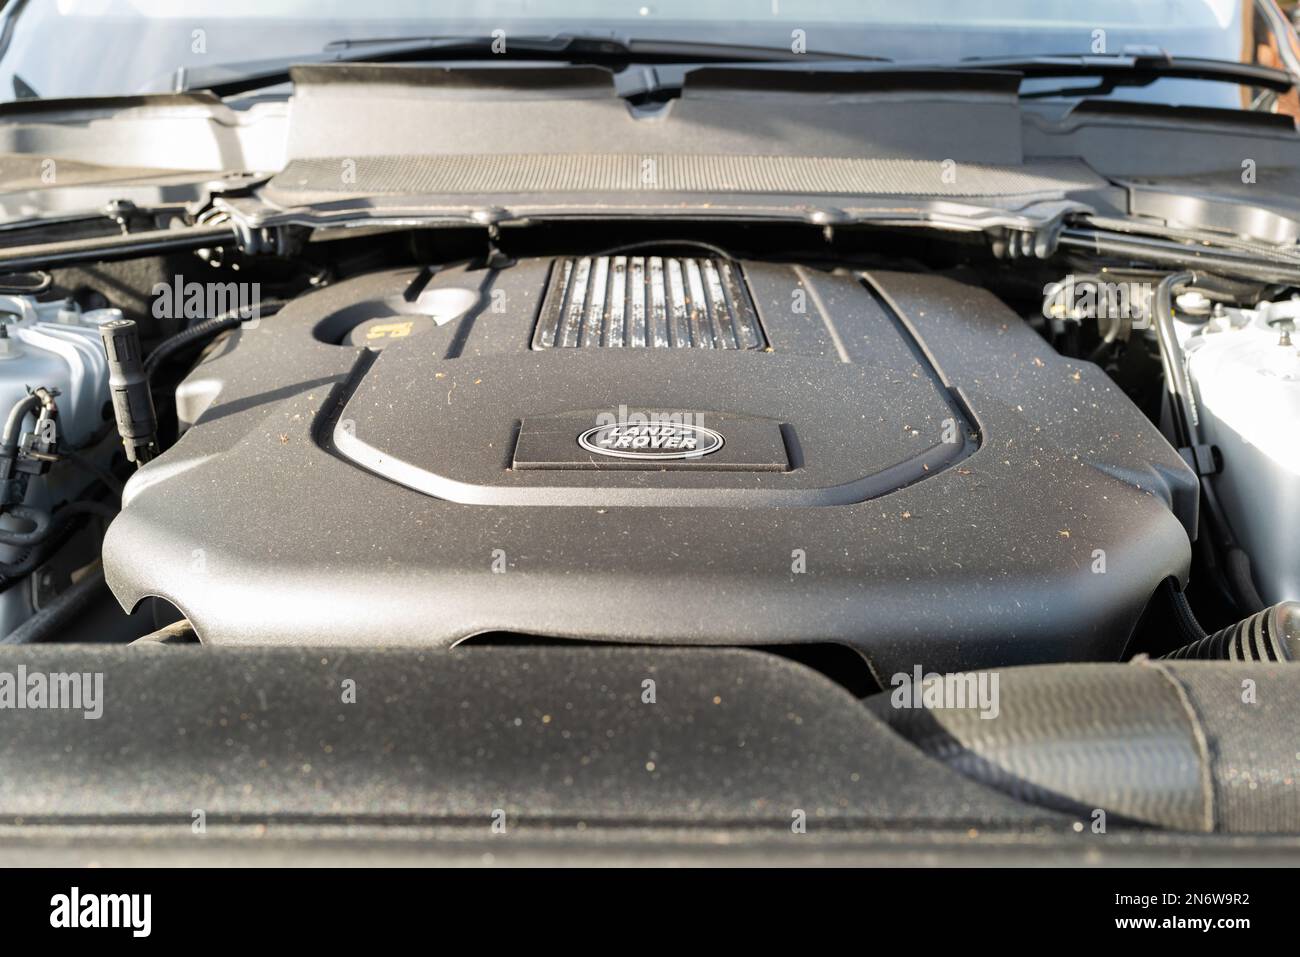 Il cofano Land Rover Discovery SUV aperto mostra il vano motore, il coperchio motore e i componenti elettronici associati. È possibile vedere il tappo del bocchettone di rifornimento dell'olio. Foto Stock